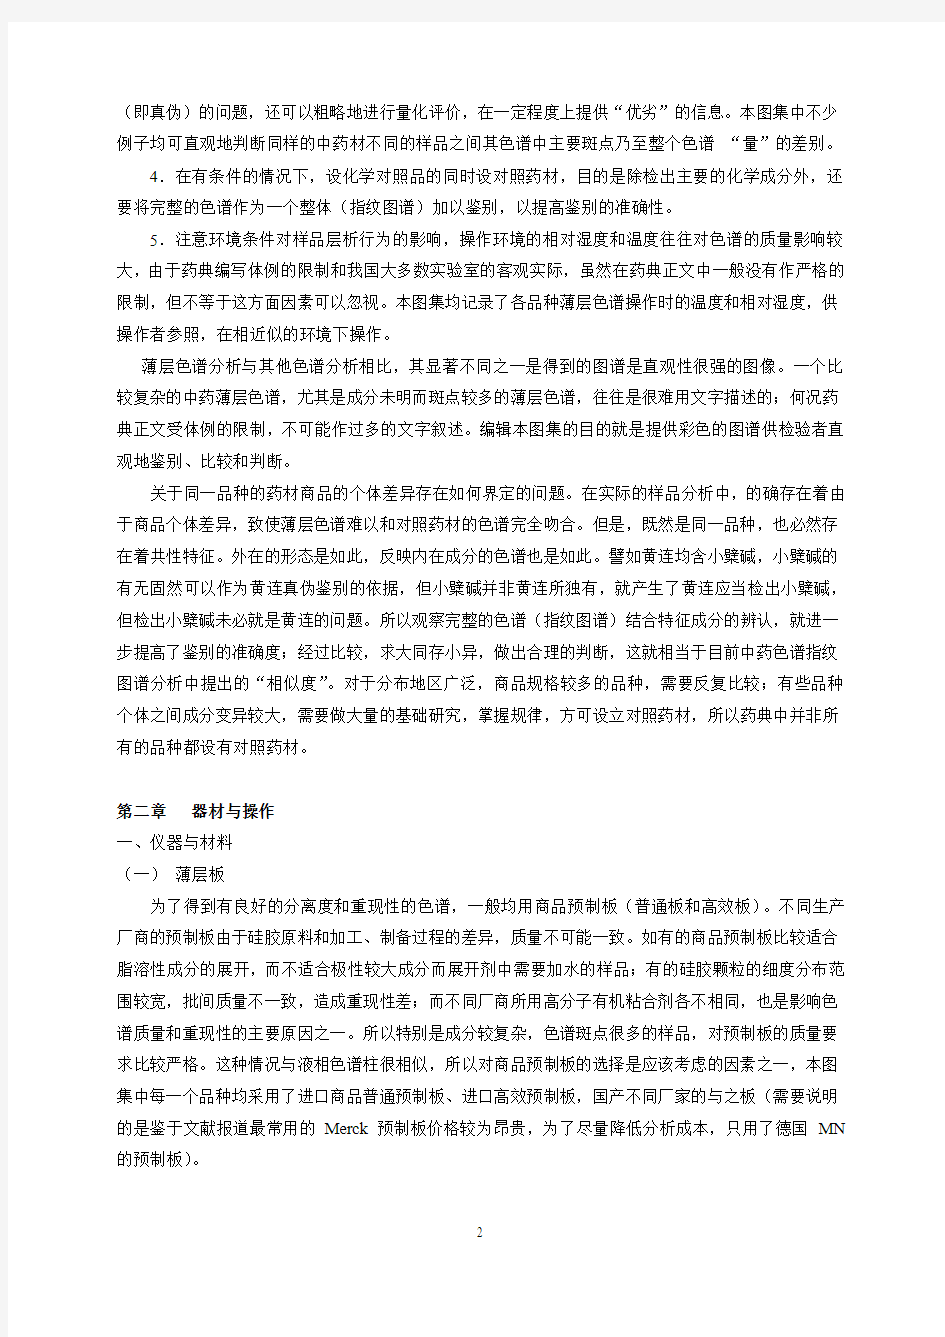 中国药典2005年版中药薄层色谱鉴别技术